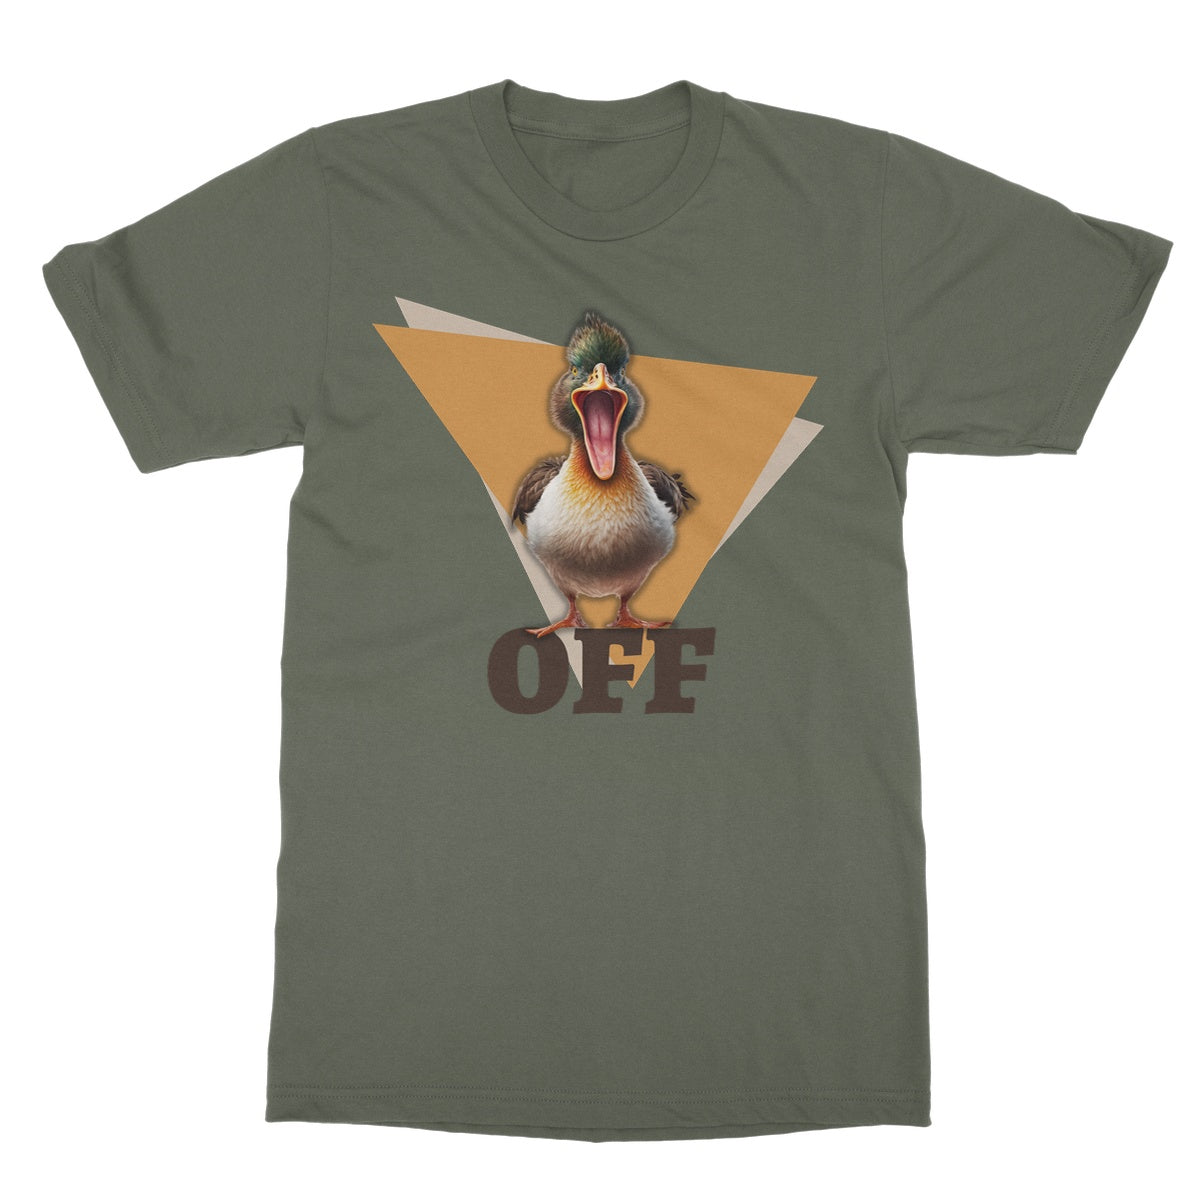 duck off t shirt green